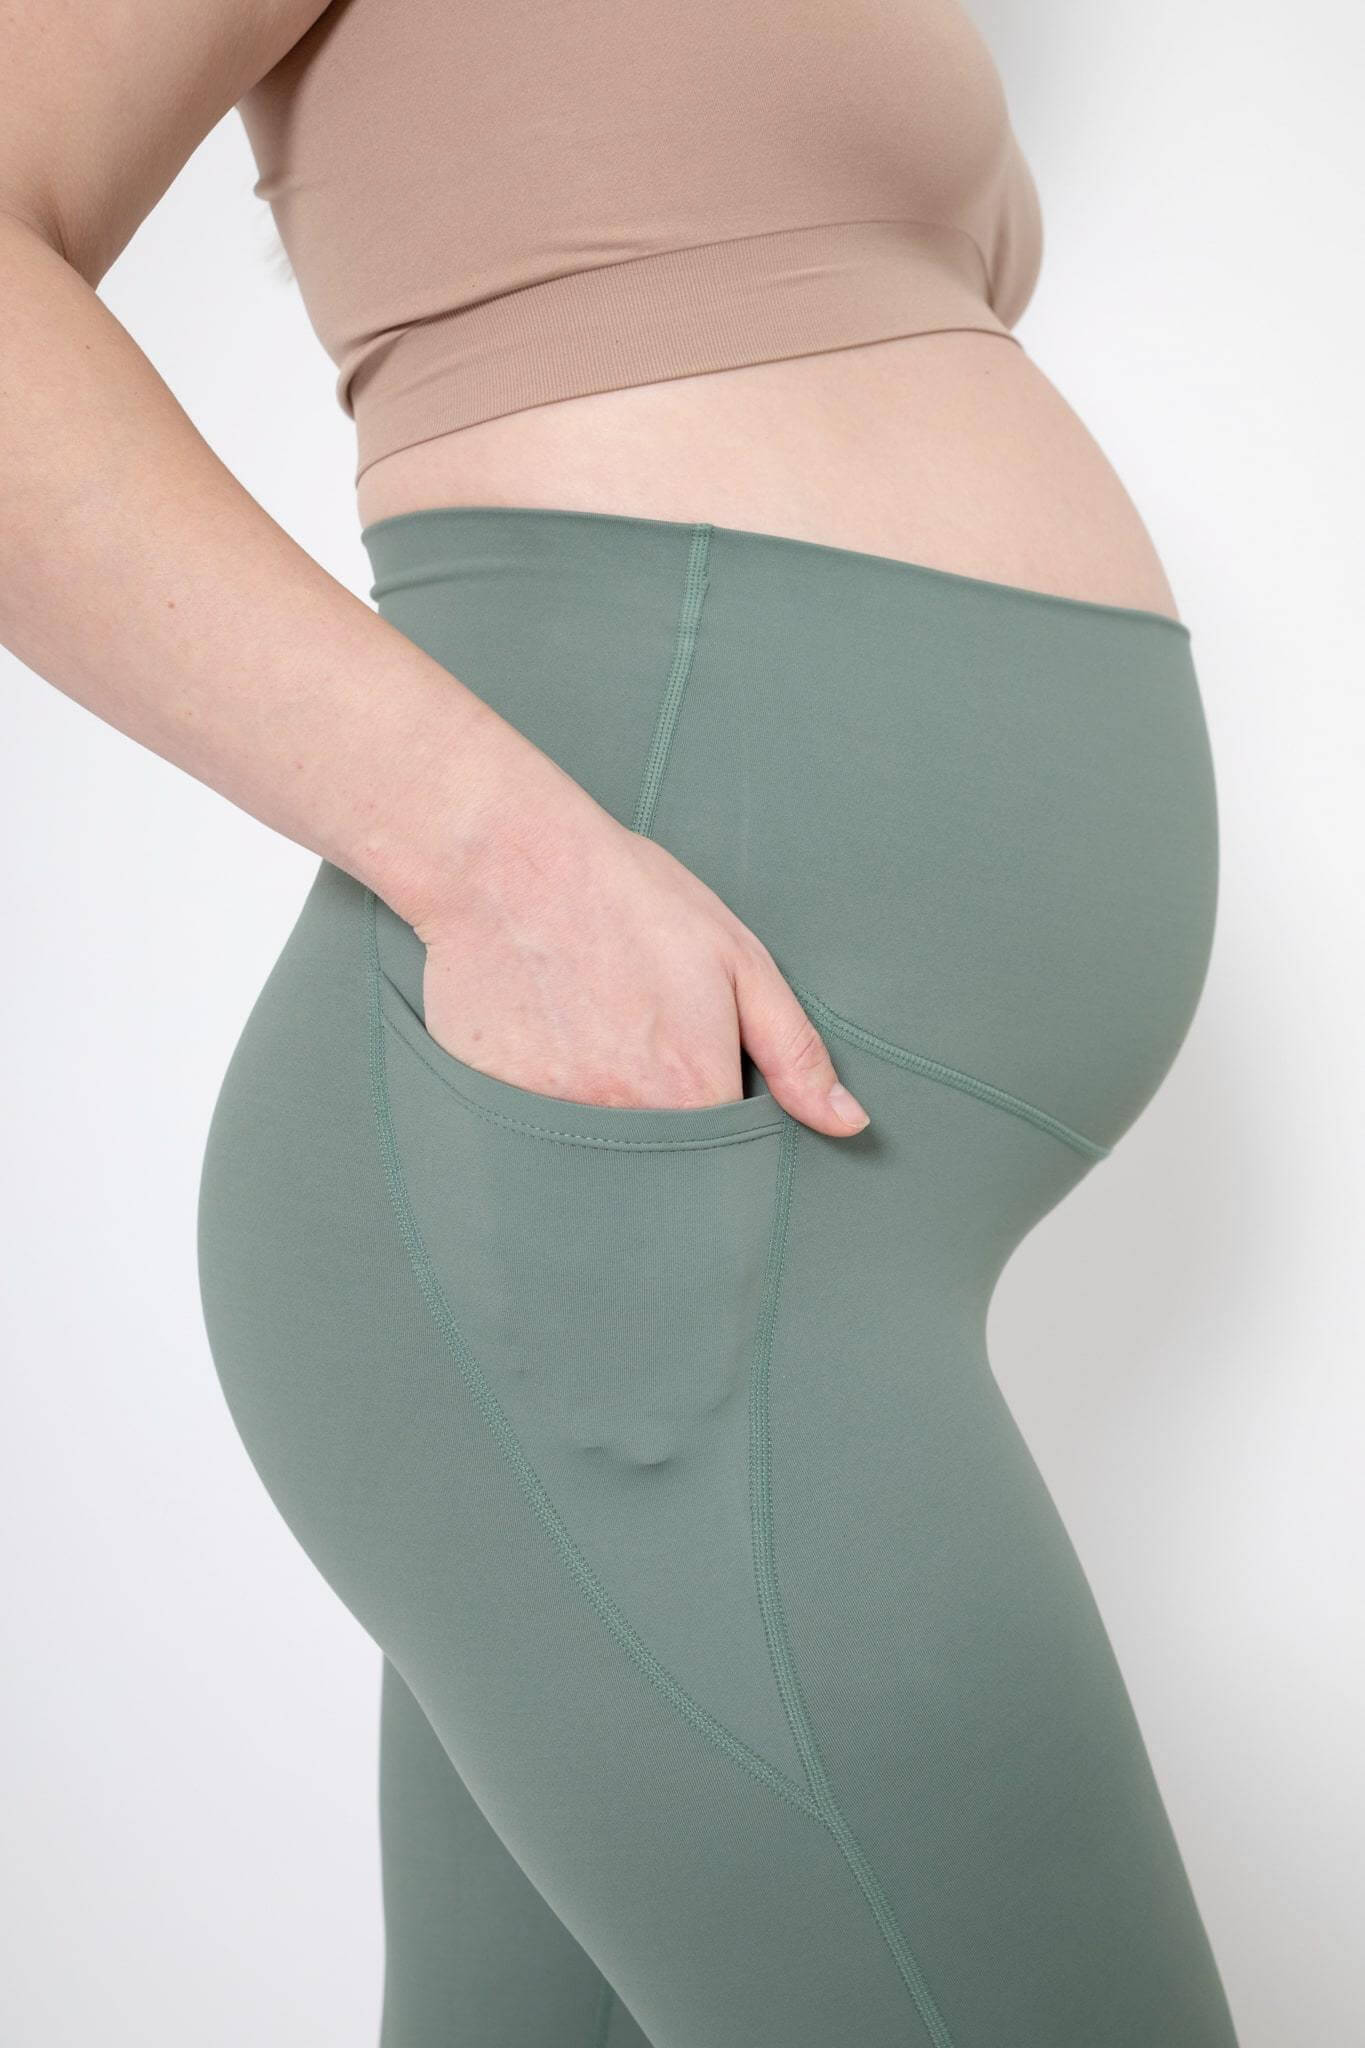 https://www.lunagray.co.uk/cdn/shop/products/Woman-wearing-the-Lyla-green-maternity-gym-leggings-pocket.jpg?v=1638306346